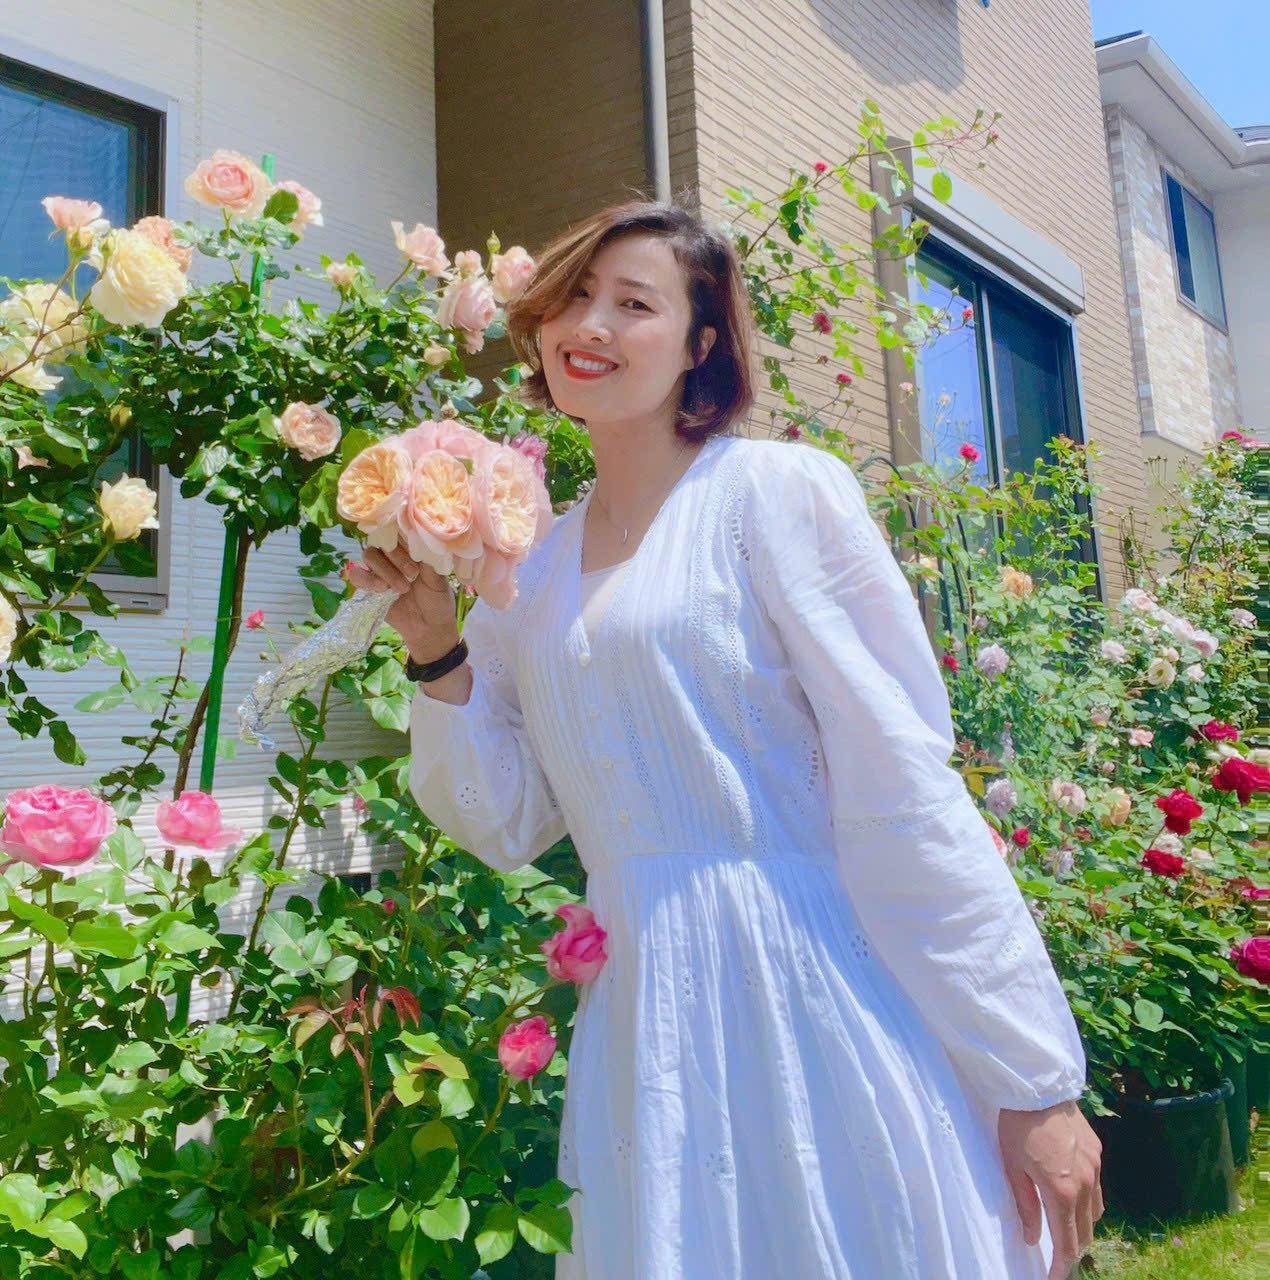 Ngôi nhà lúc nào cũng thơm nức mùi hoa vì có vườn hồng hơn 80 loại của mẹ Việt ở Nhật- Ảnh 21.